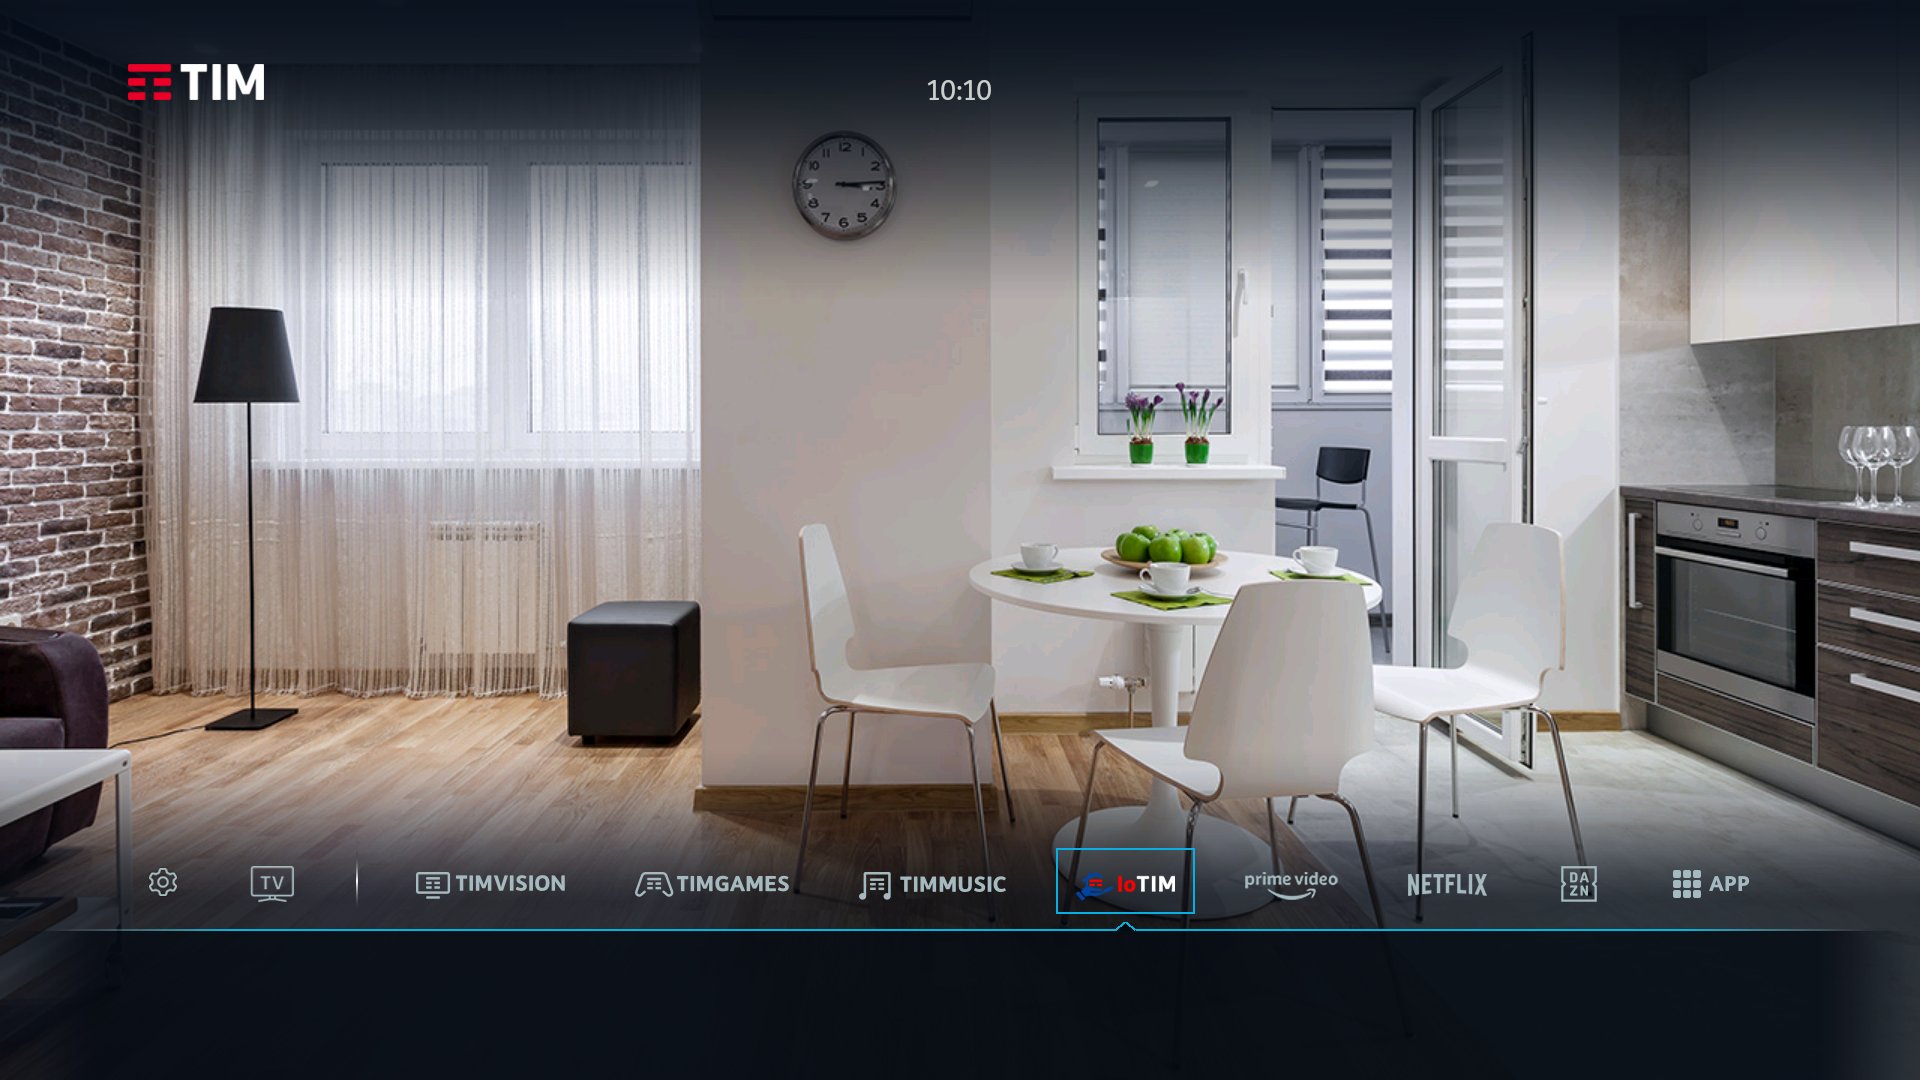 Foto - IoTIM, la smart home disponibile dalla TV di casa con nuovi servizi